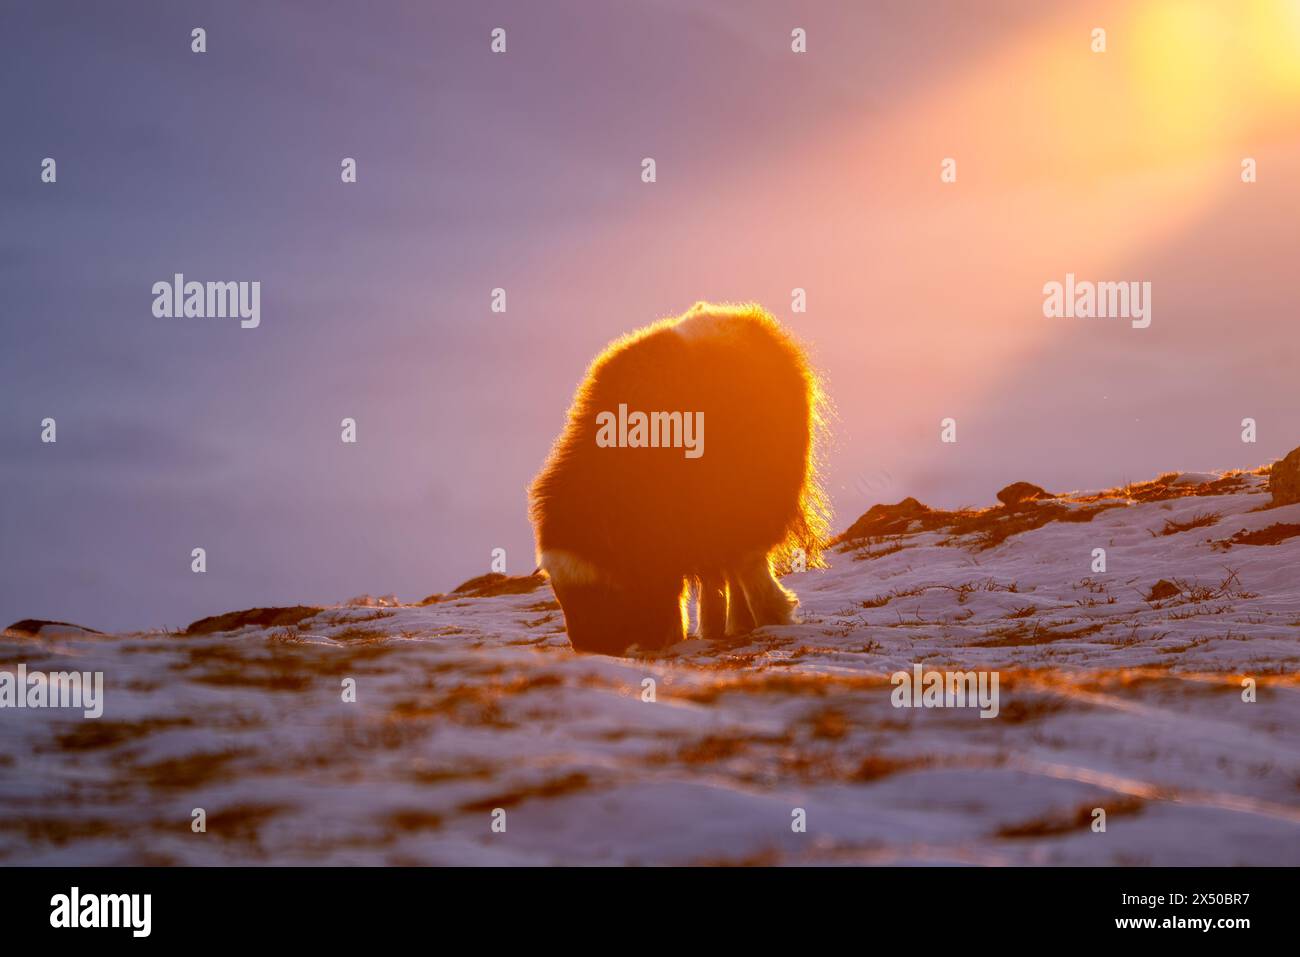 Bellissimo ritratto di un bue muschiato nella neve in cerca di qualcosa da mangiare tra pietre, cespugli e muschio con un bellissimo tramonto in una landsca innevata Foto Stock